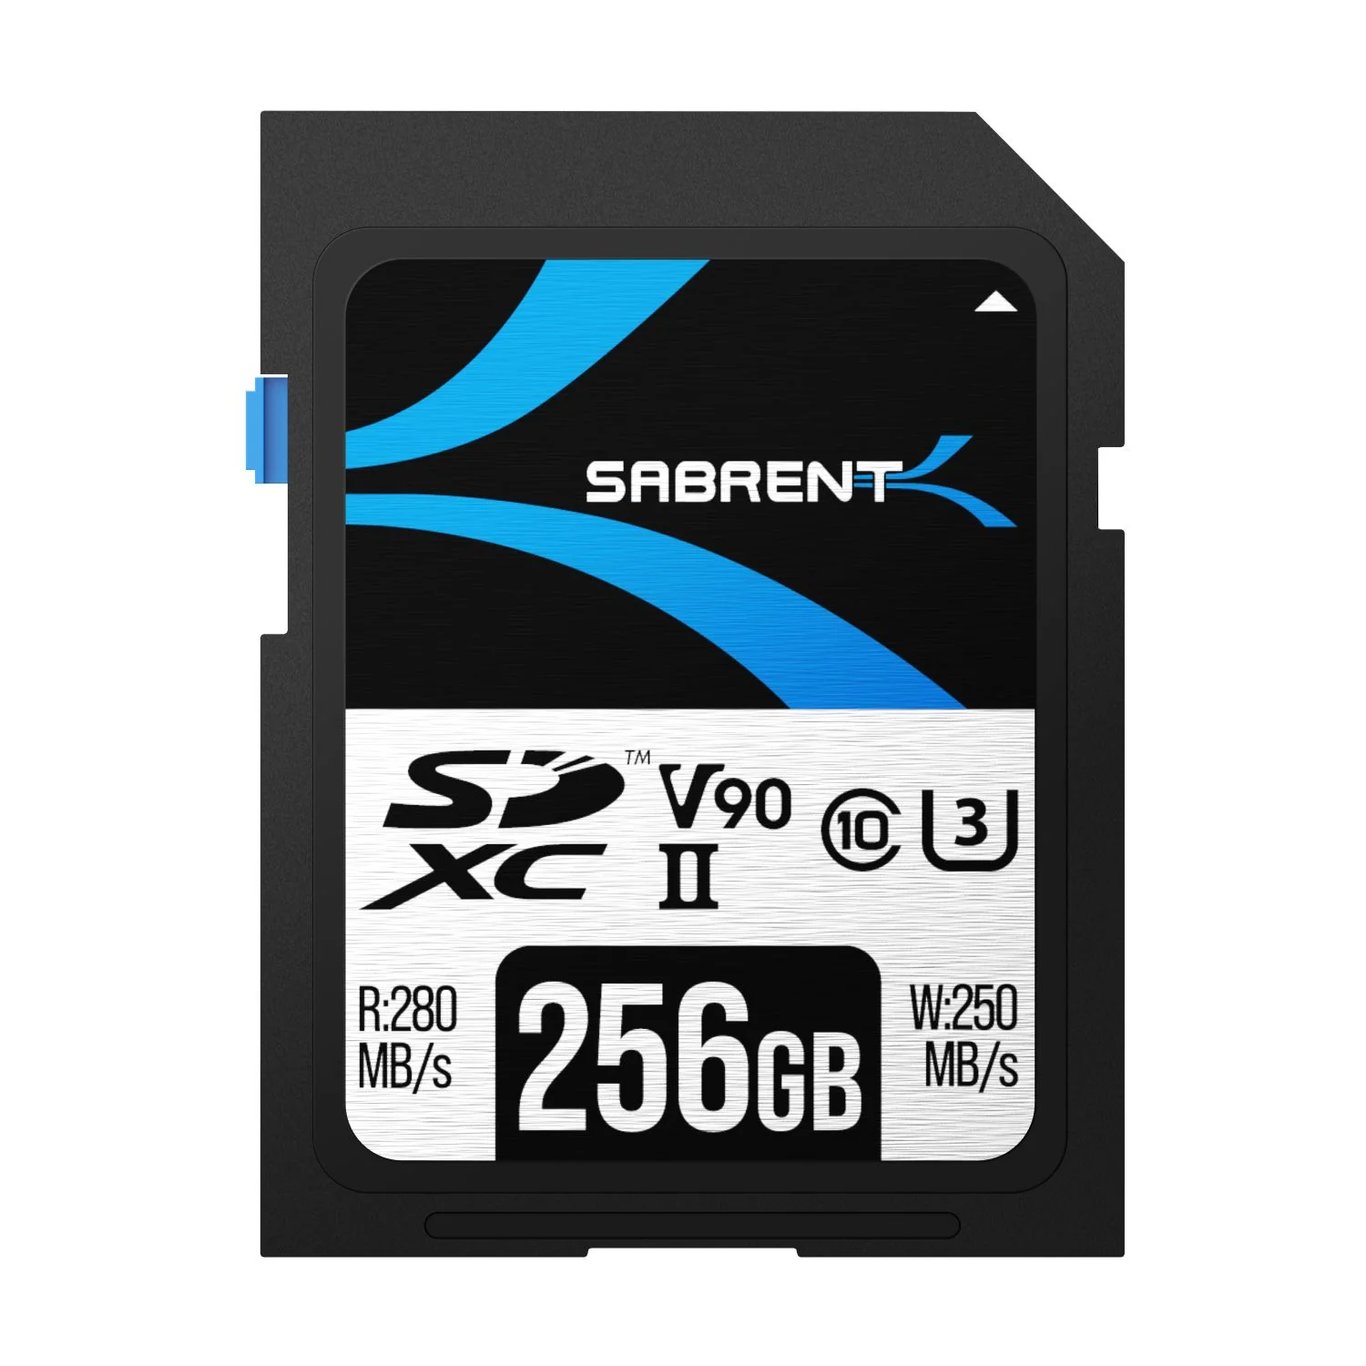 SABRENT Rocket v90 SD UHS-II Memory Card 256GB